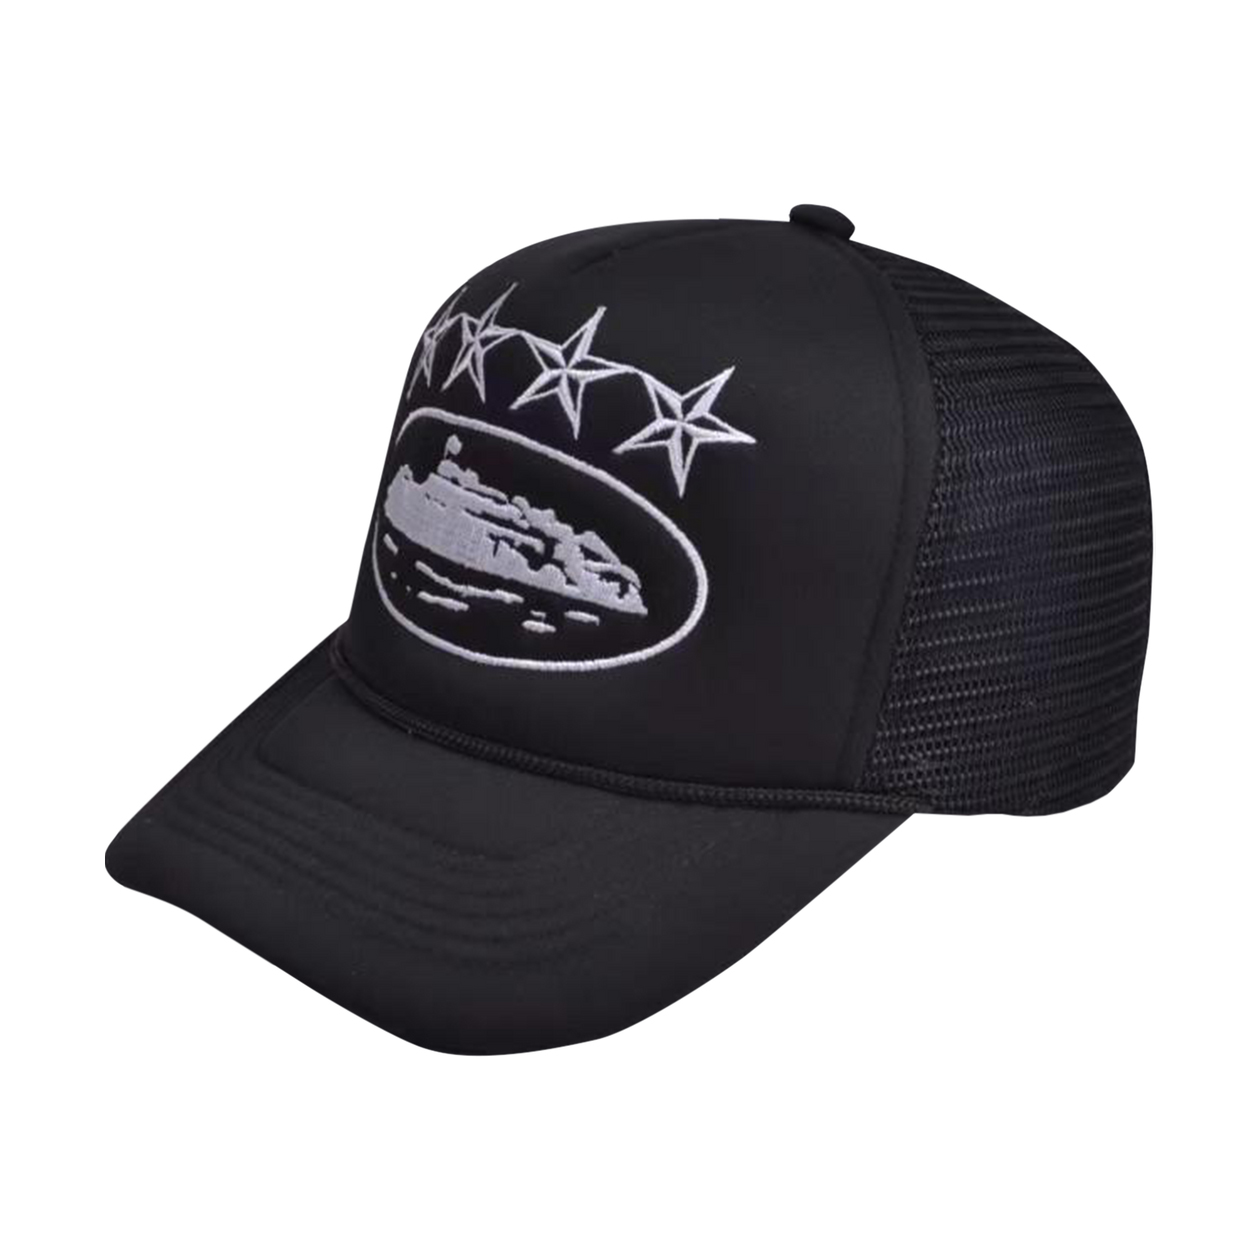 Pre-owned 4starz Alcatraz Trucker Hat Black